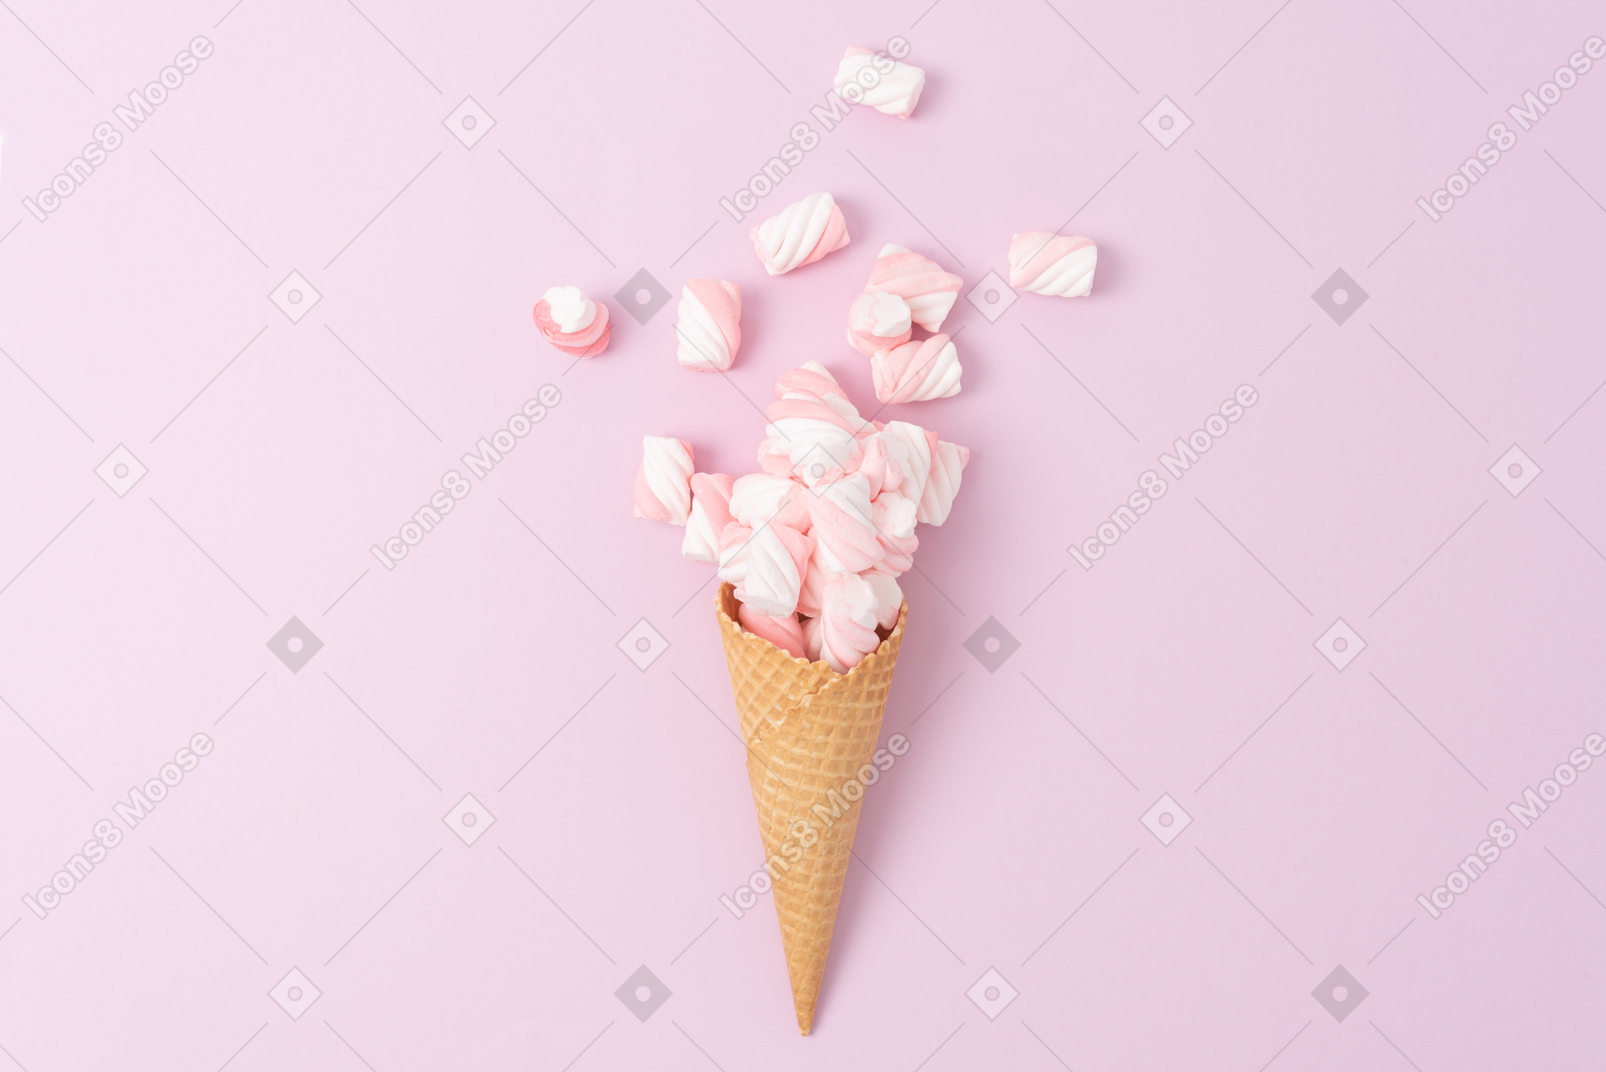 핑크 마시멜로 가득한 아이스크림 콘